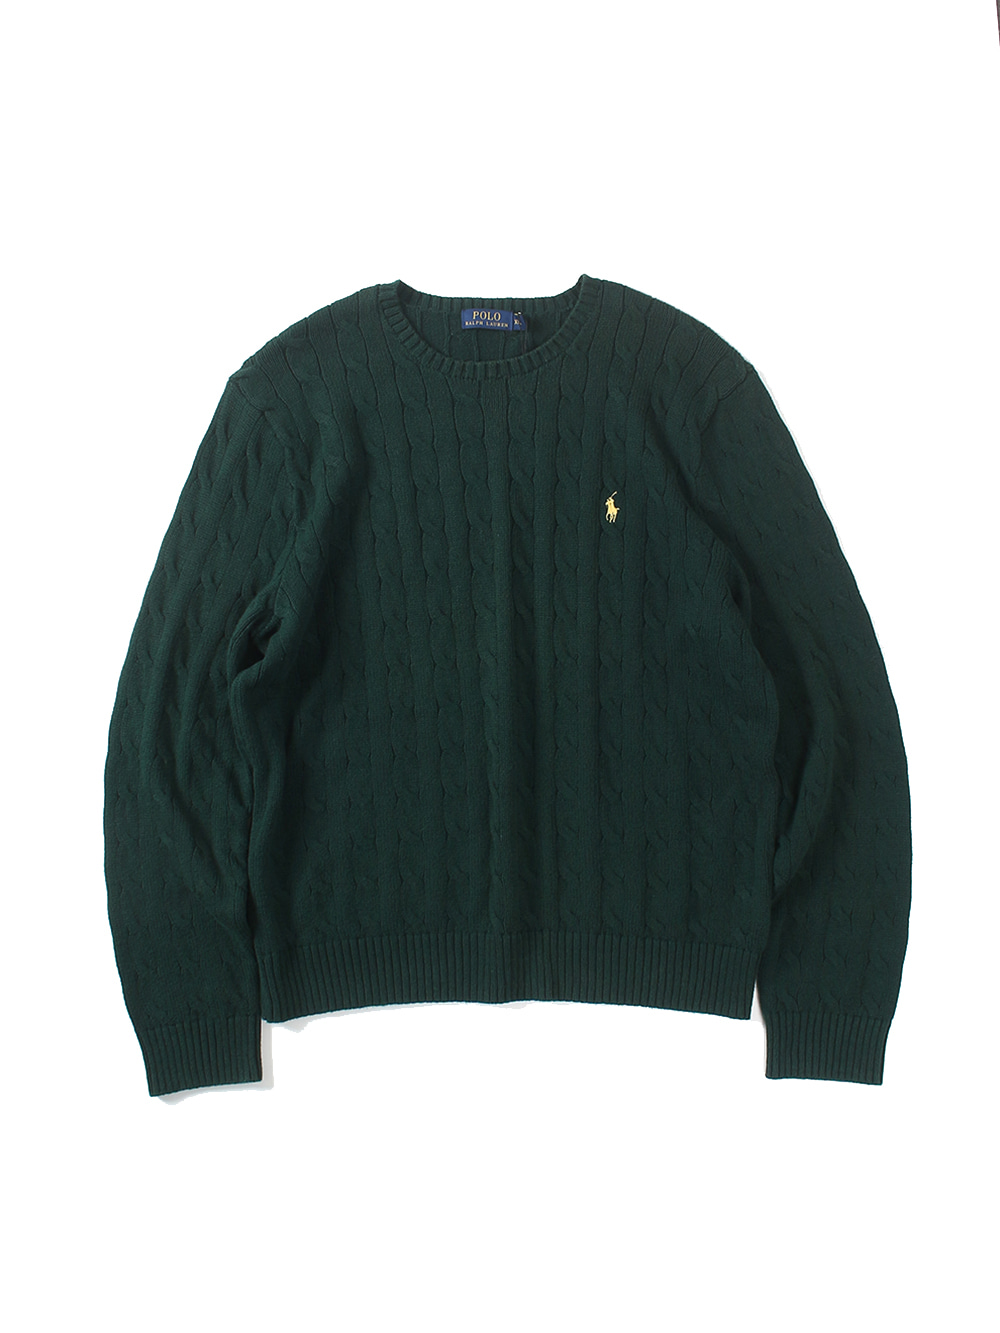 [ XXL ] Polo Ralph Lauren Sweater (6519)